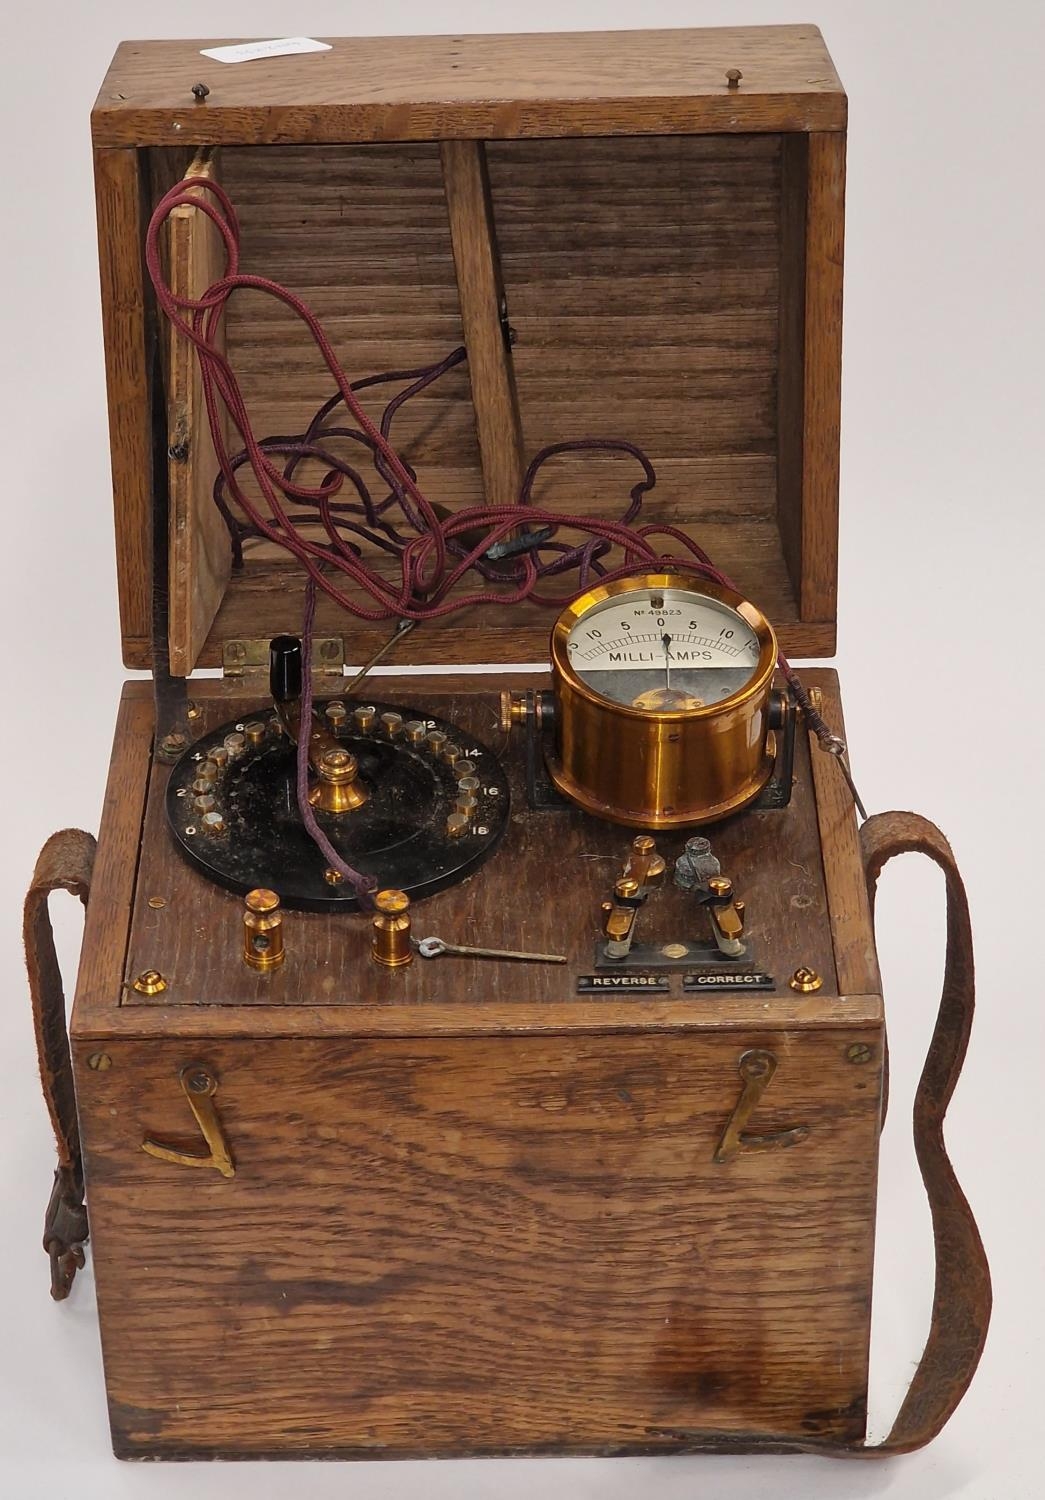 Vintage electronic volt meter.